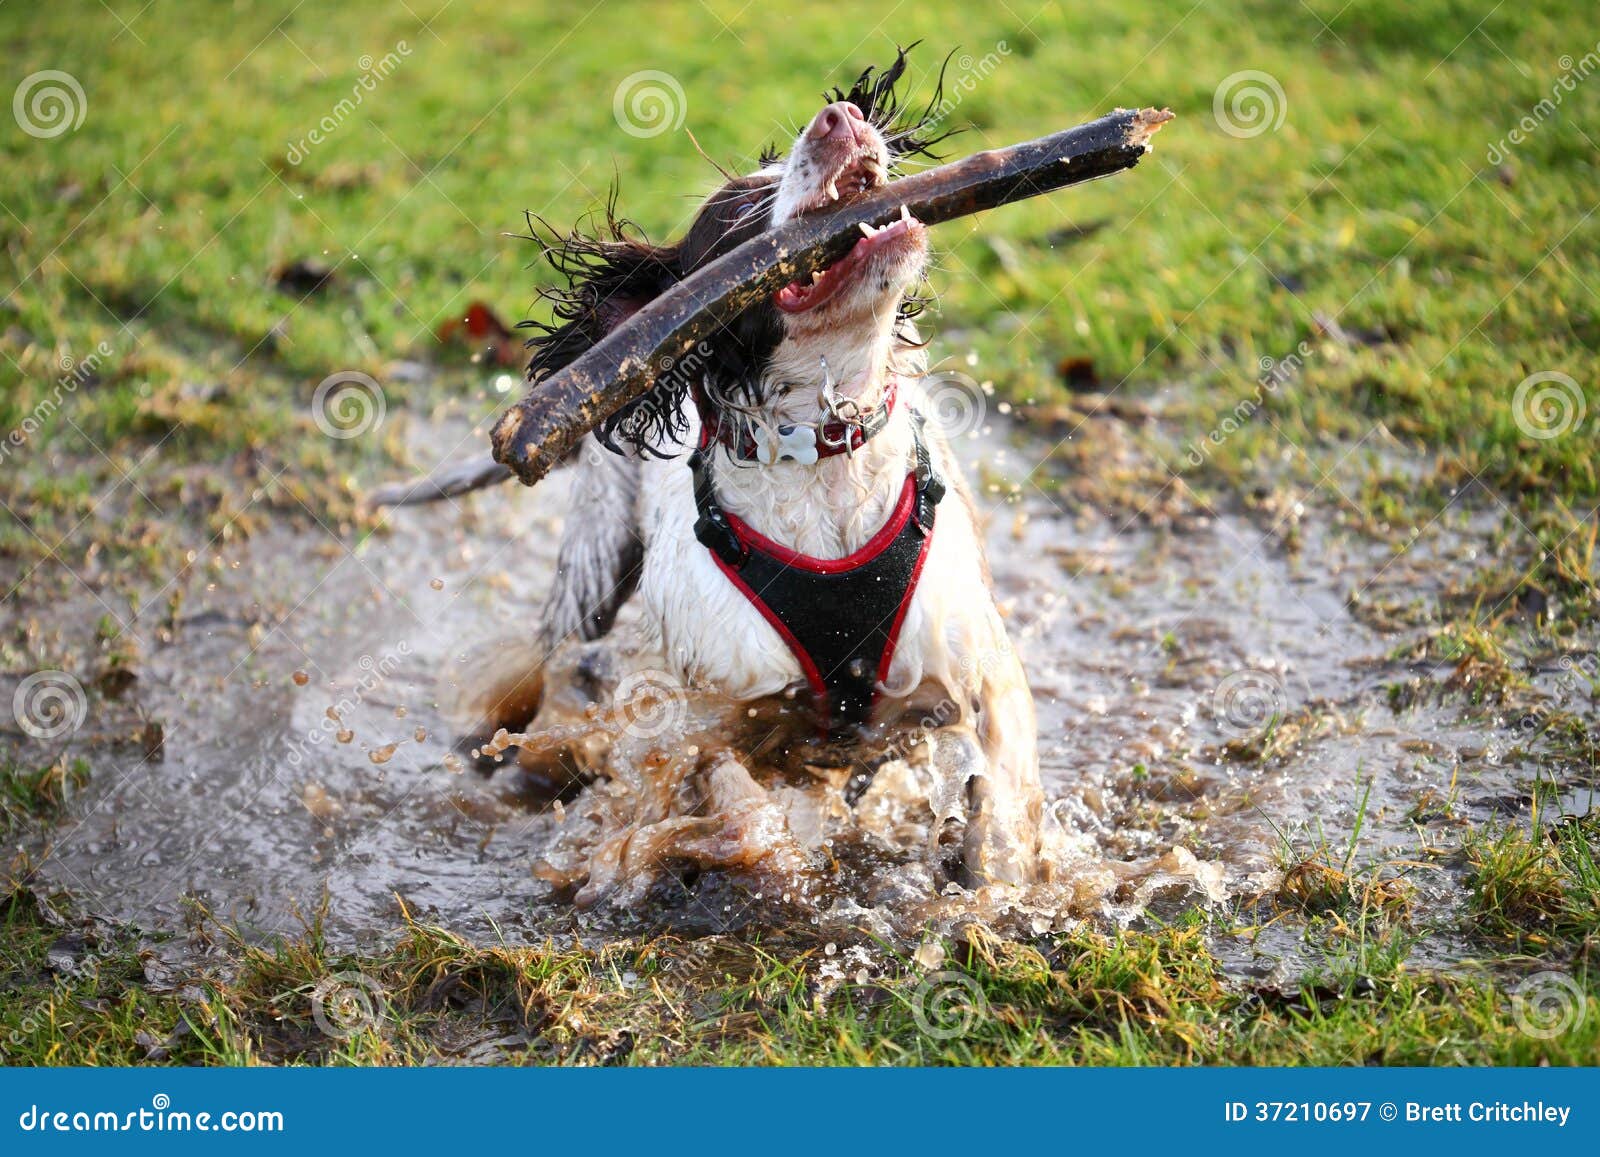 splashing wet dog in puddle